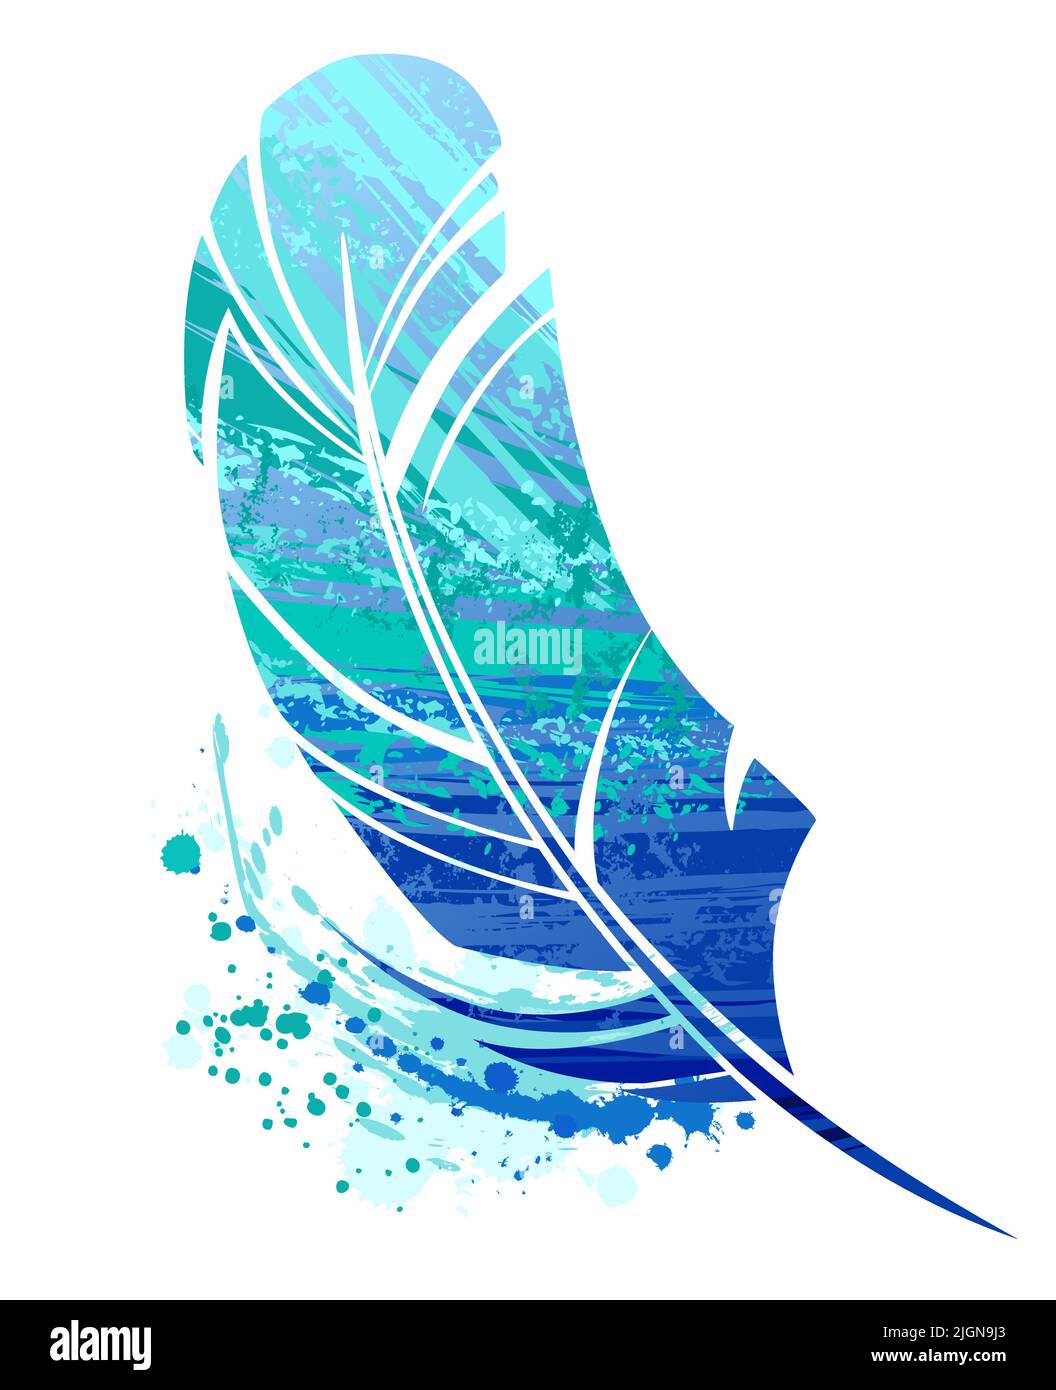 Petite plume d'oiseau peinte avec de grandes touches de peinture acrylique bleue et turquoise sur fond blanc. Mise en plan saccadée Illustration de Vecteur